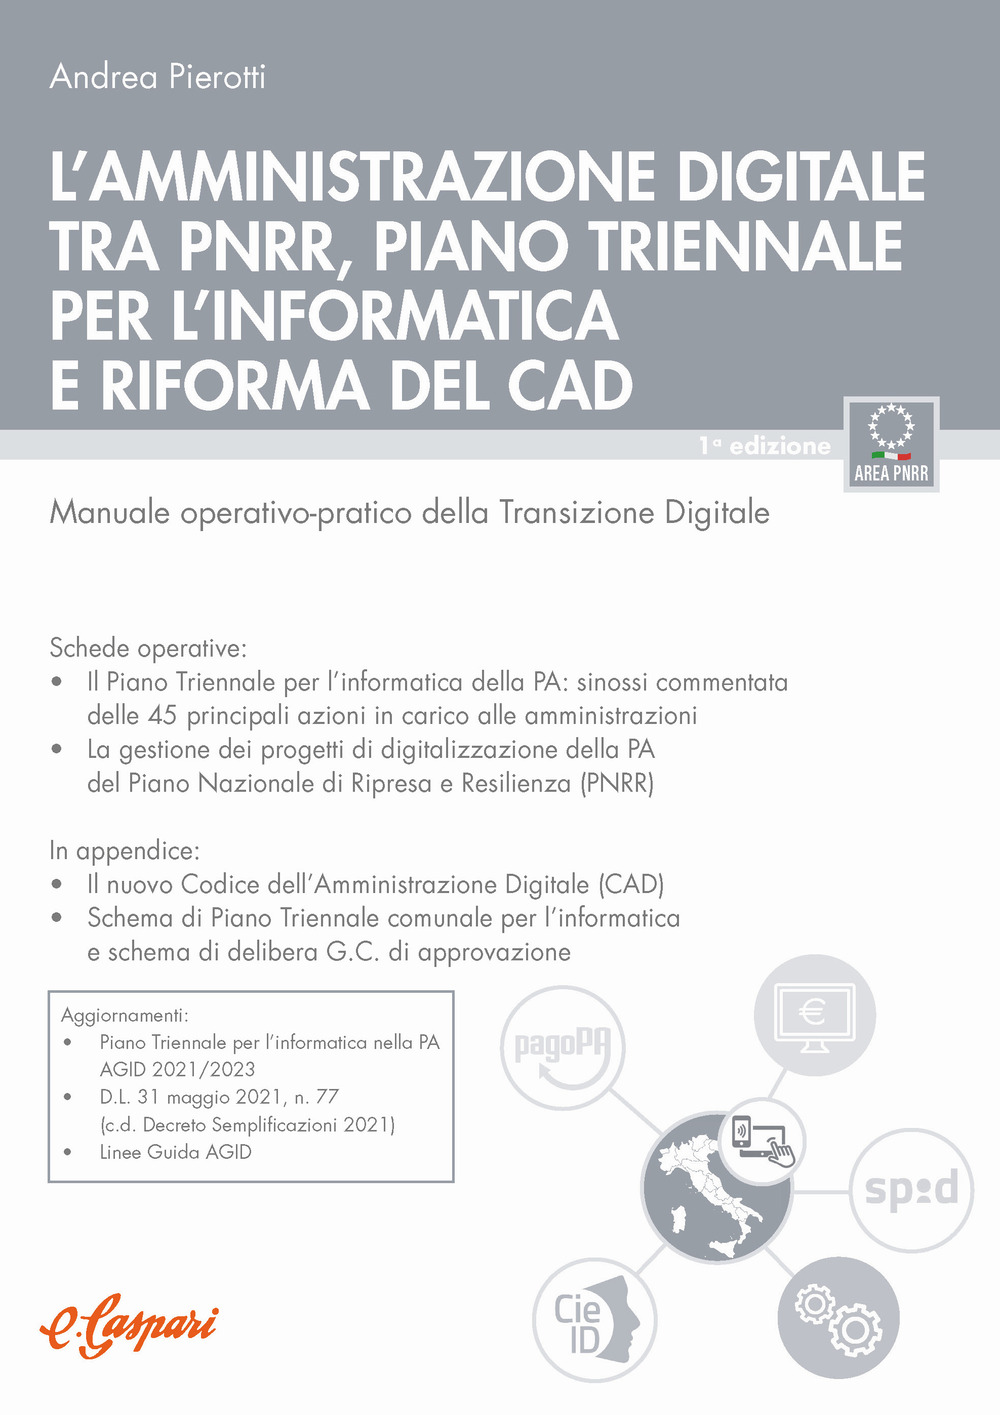 L'amministrazione digitale tra PNRR, piano triennale per l'informatica e riforma del CAD. Manuale operativo-pratico della transizione digitale